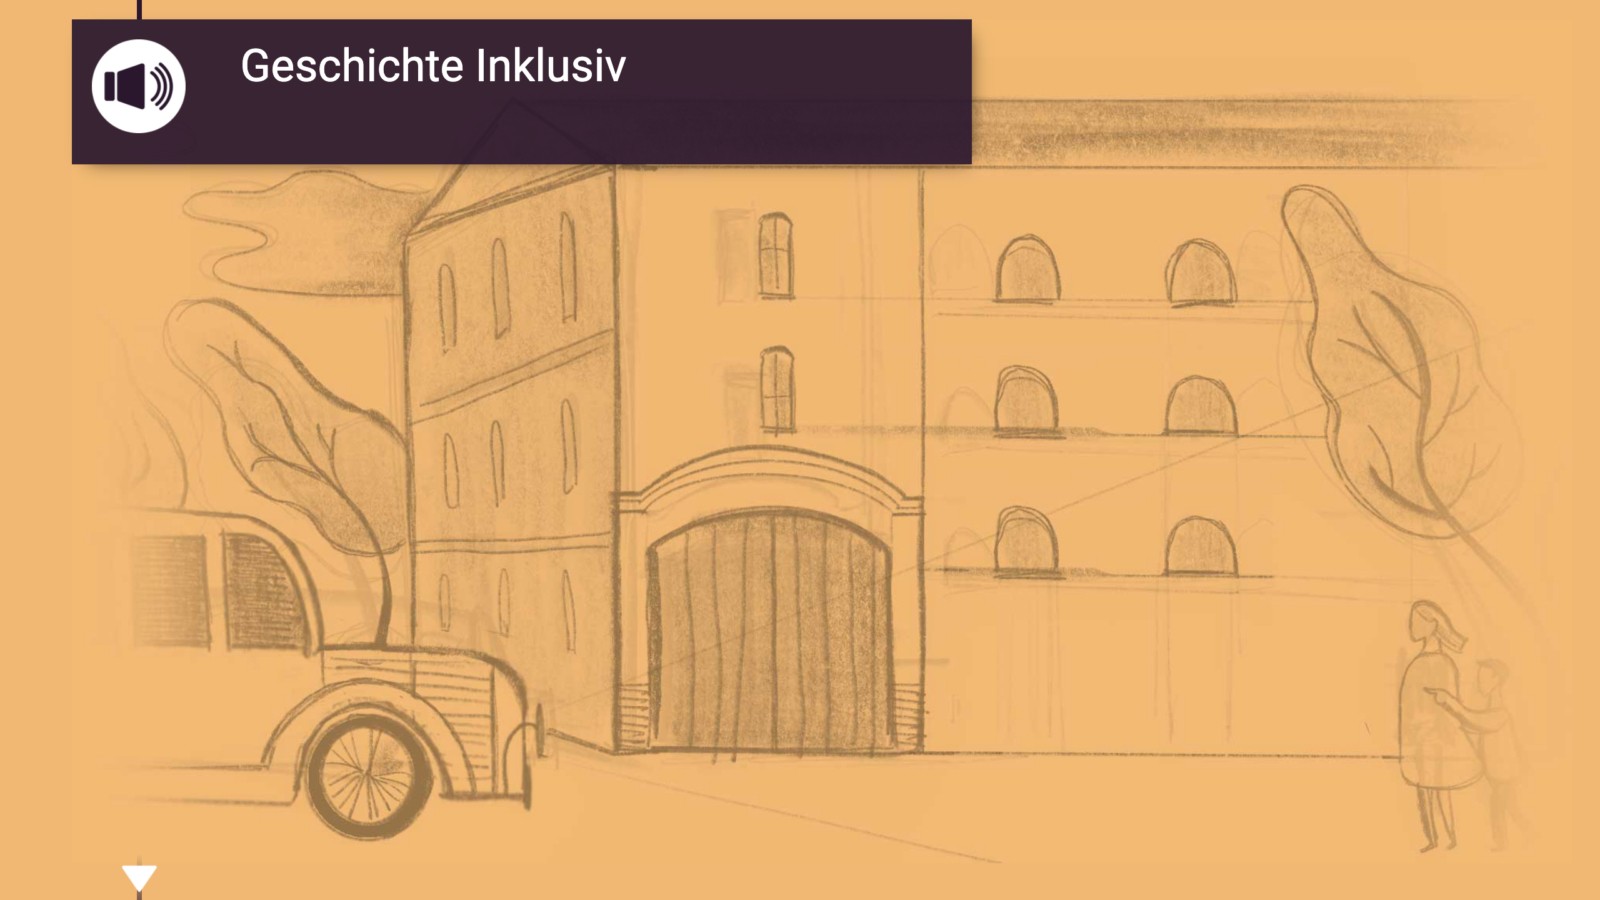 Screenshot: Geschichte Inklusiv. Der Titel der Seite: Geschichte Inklusiv. Es ist eine Skizze zu sehen. Ein Gebäude mit geschlossenen Fenster und ein Bus der ankommt.